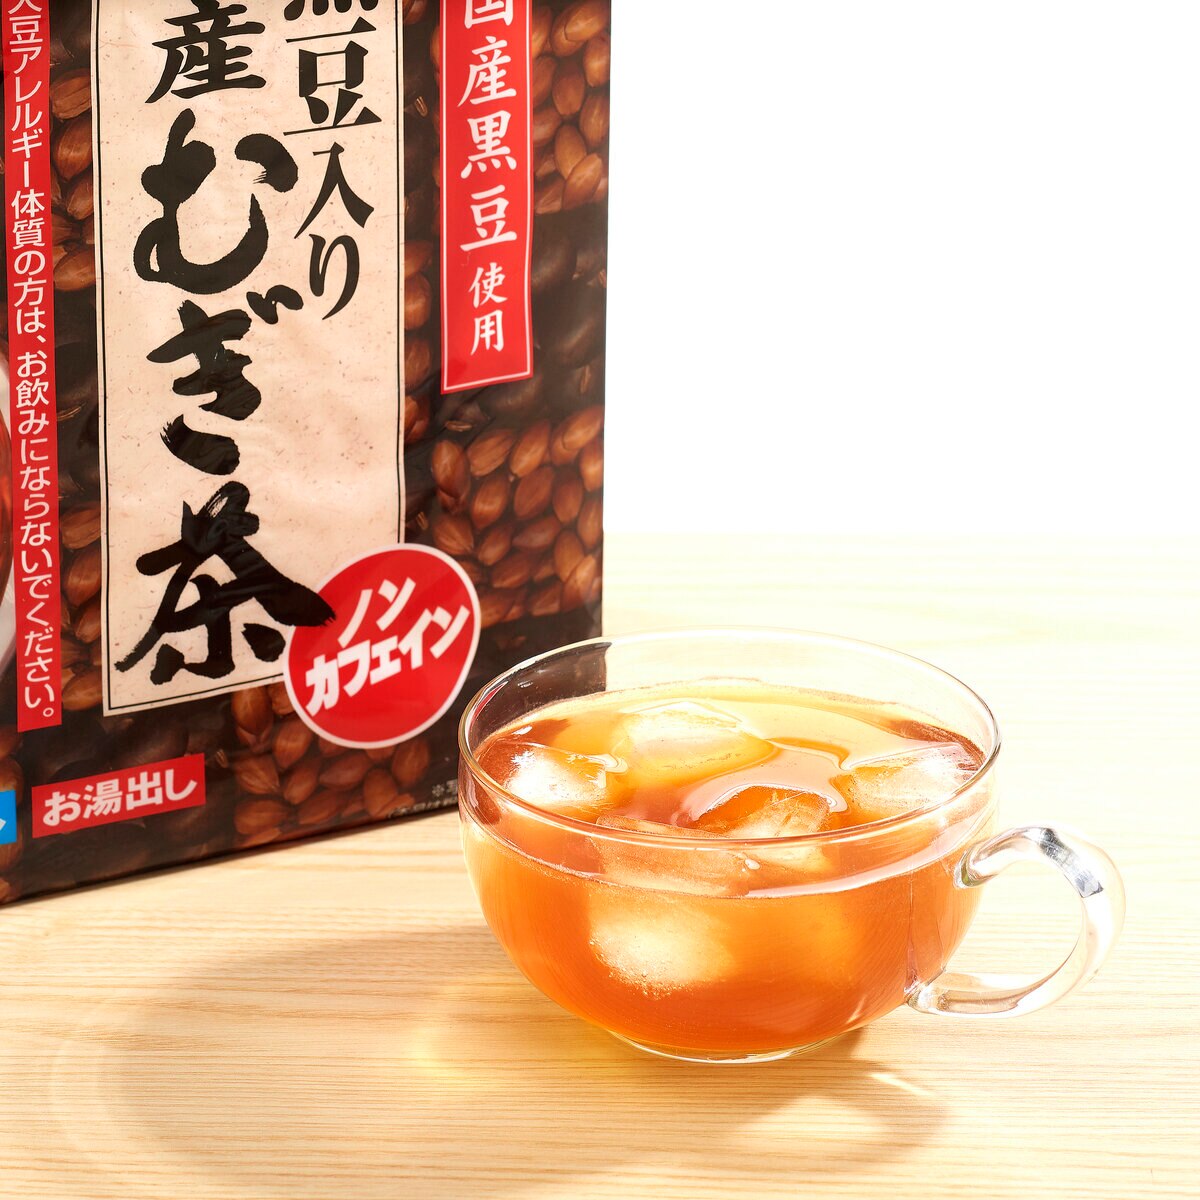 伊藤園黒豆入り国産麦茶 30袋 x 4 | Costco Japan